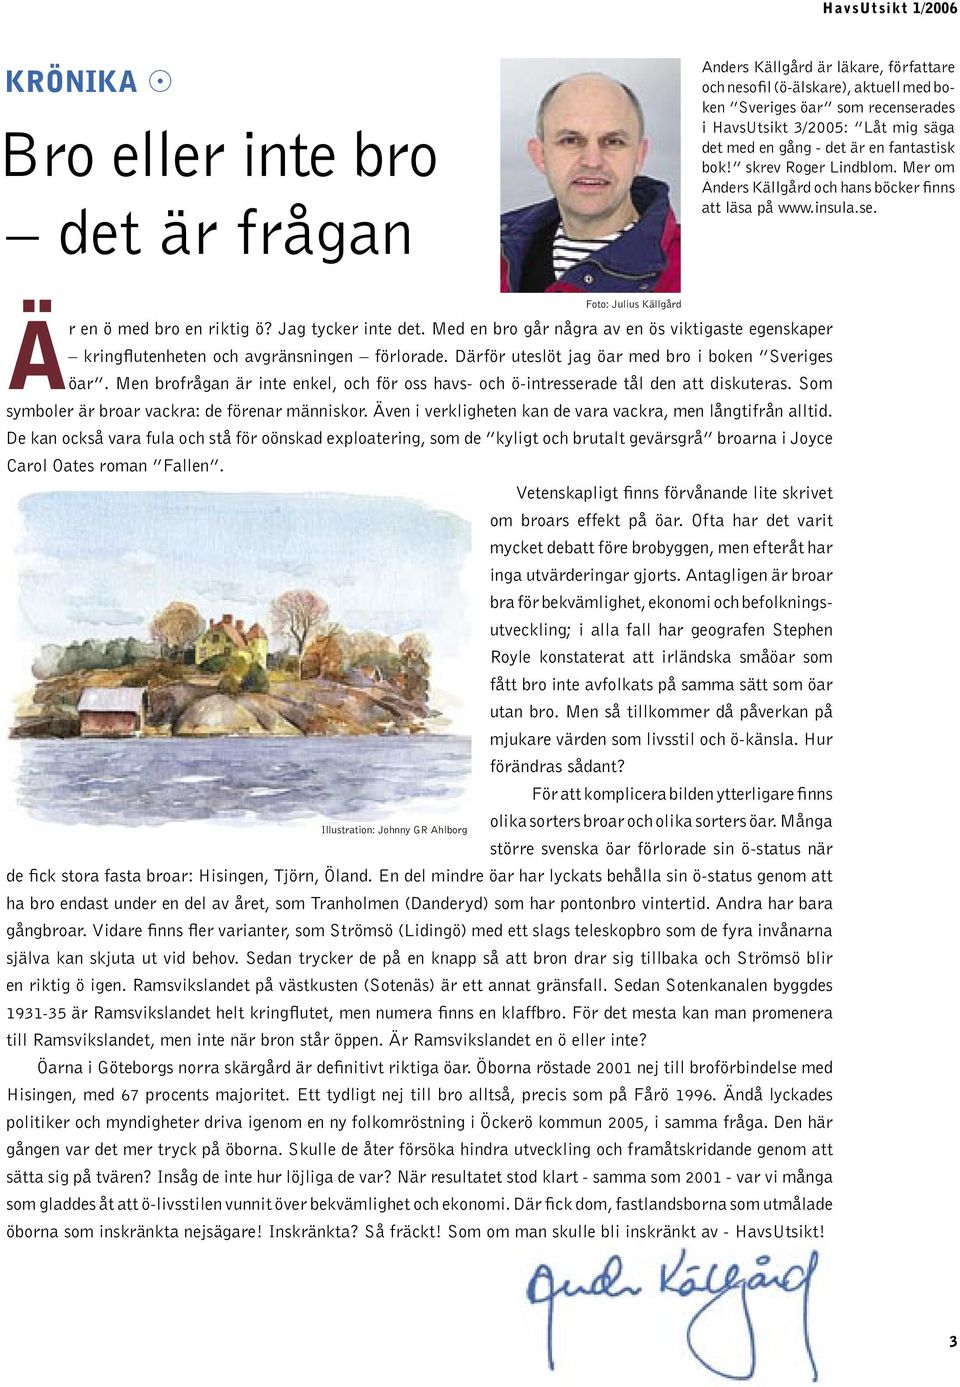 Med en bro går några av en ös viktigaste egenskaper kringflutenheten och avgränsningen förlorade. Därför uteslöt jag öar med bro i boken Sveriges öar.